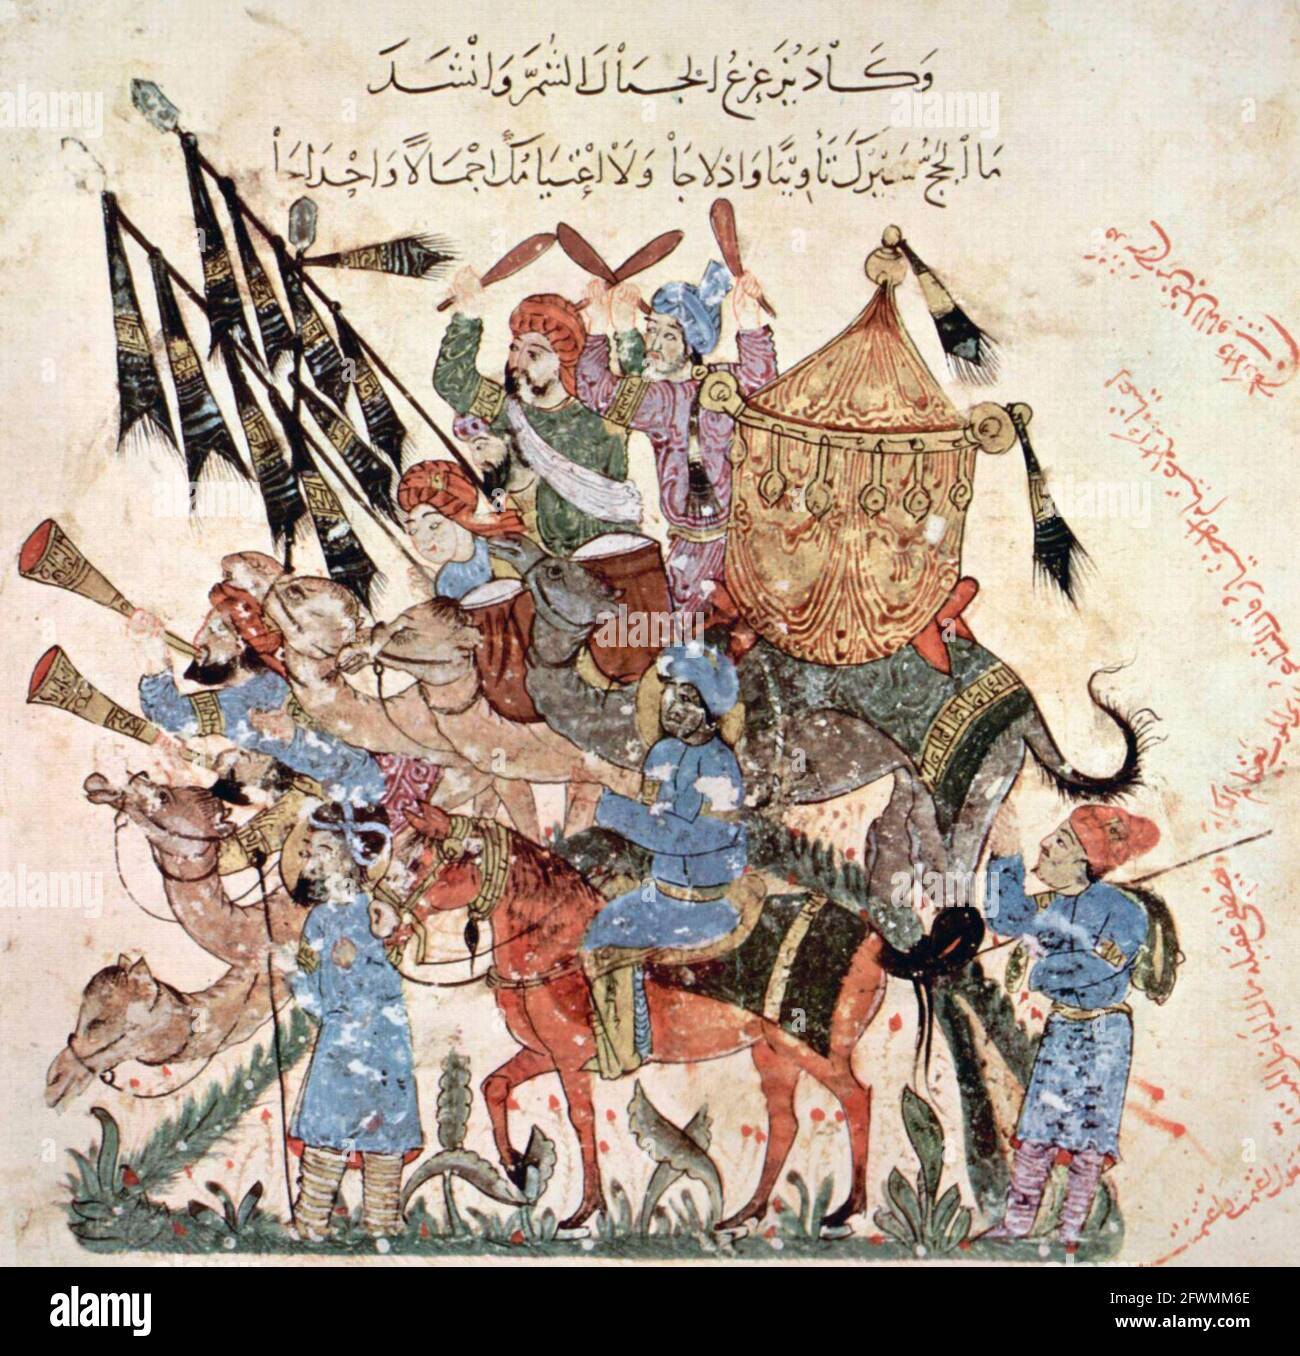 Illustration d'un livre du XIIIe siècle produit à Bagdad par al-Wasiti, montrant un groupe de pèlerins sur un hajj Banque D'Images